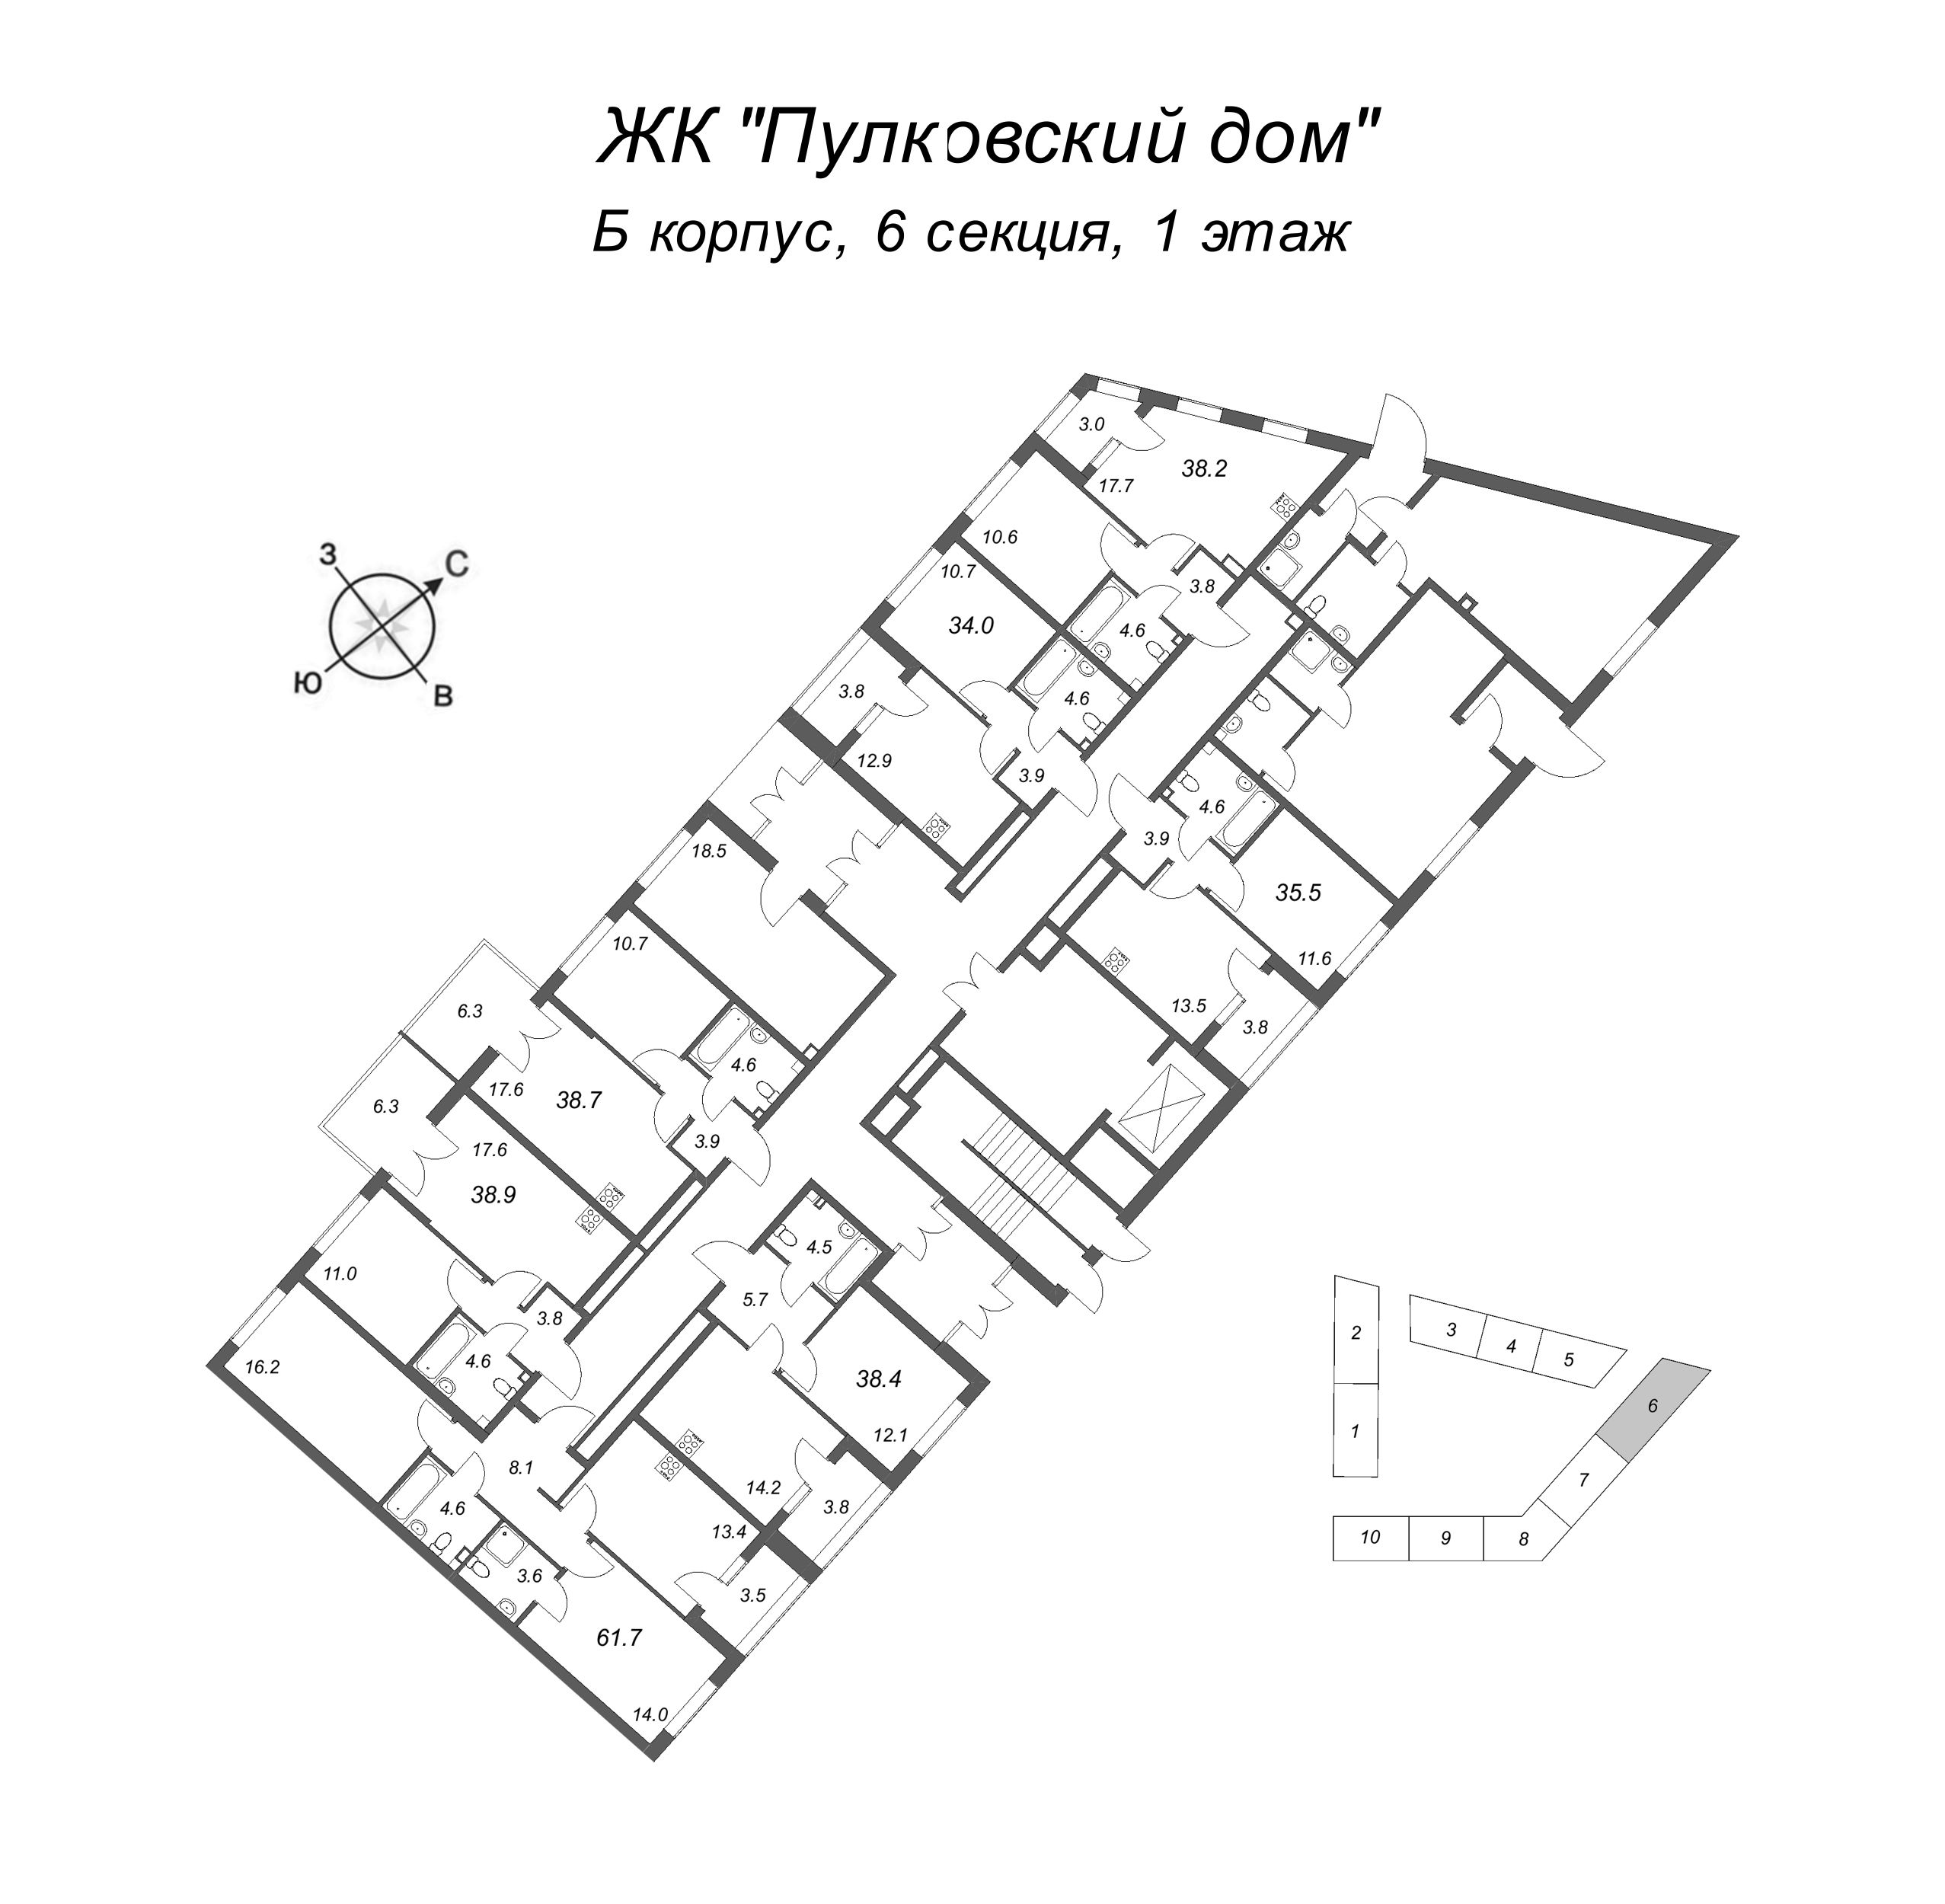 2-комнатная (Евро) квартира, 38.9 м² в ЖК "Пулковский дом" - планировка этажа